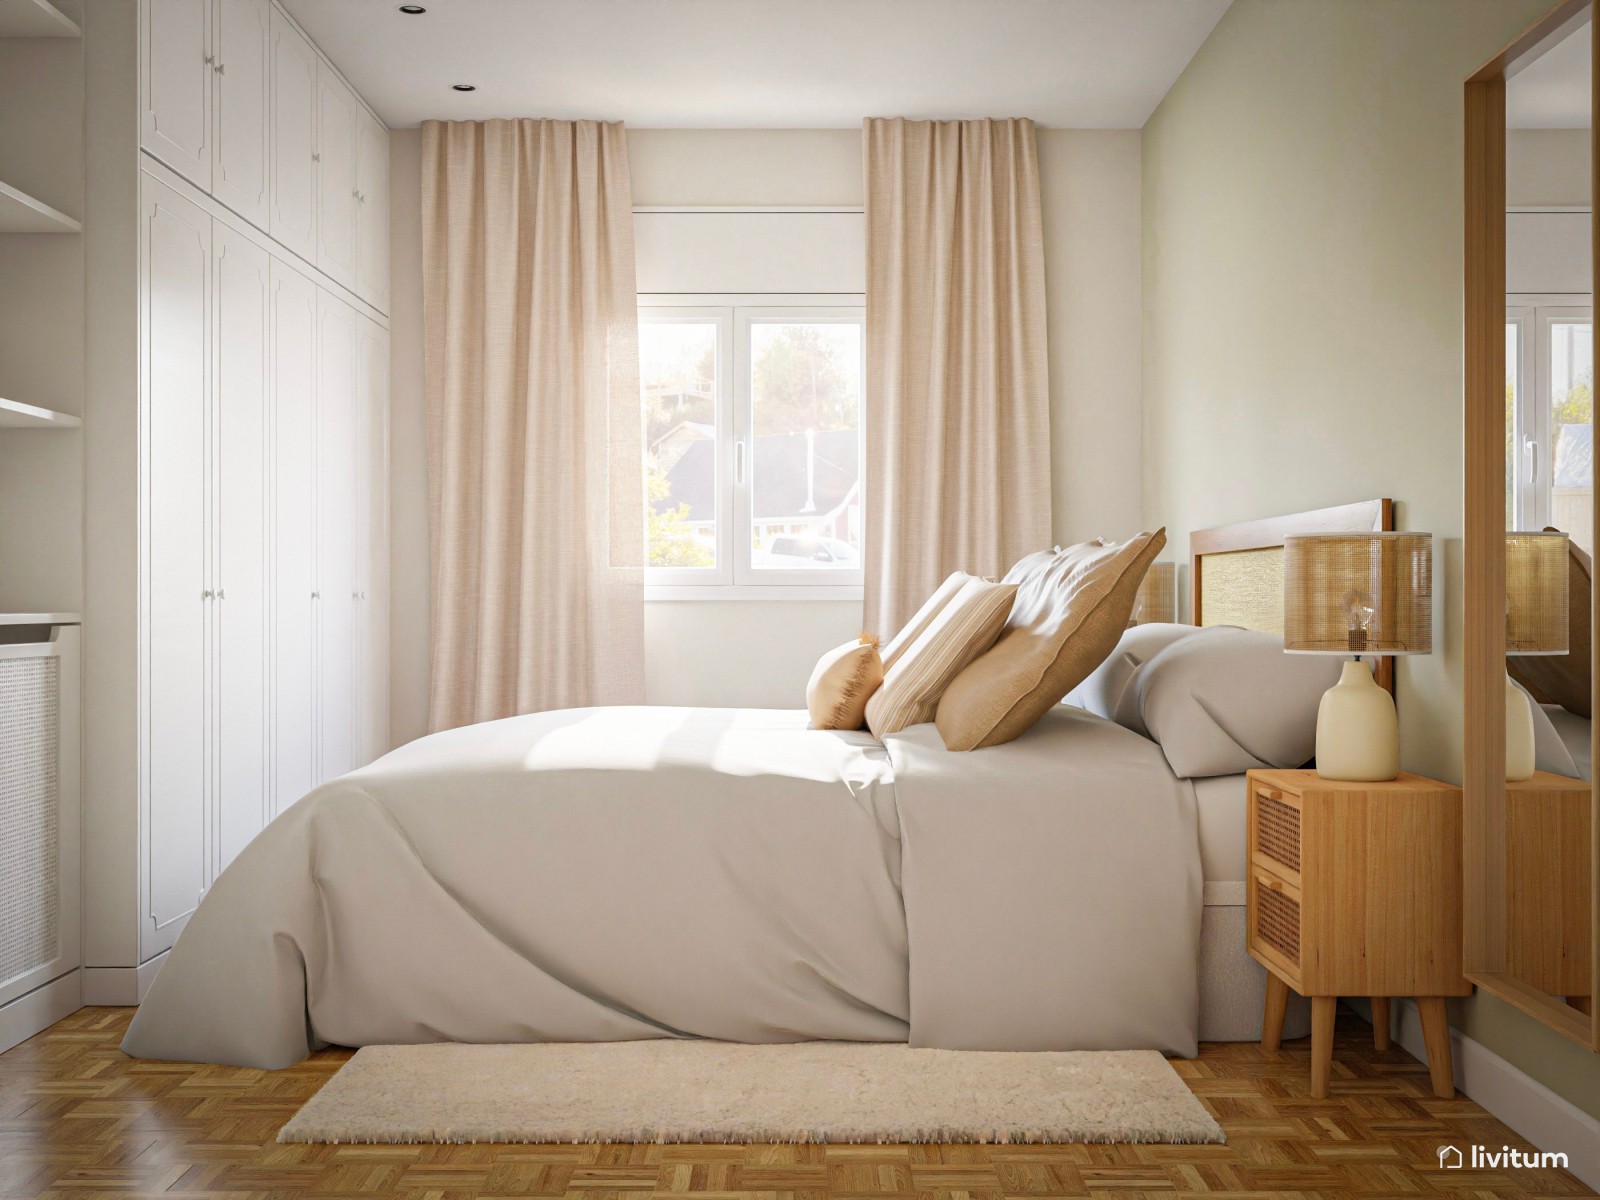 Dormitorio rústico y nórdico con fibras naturales 